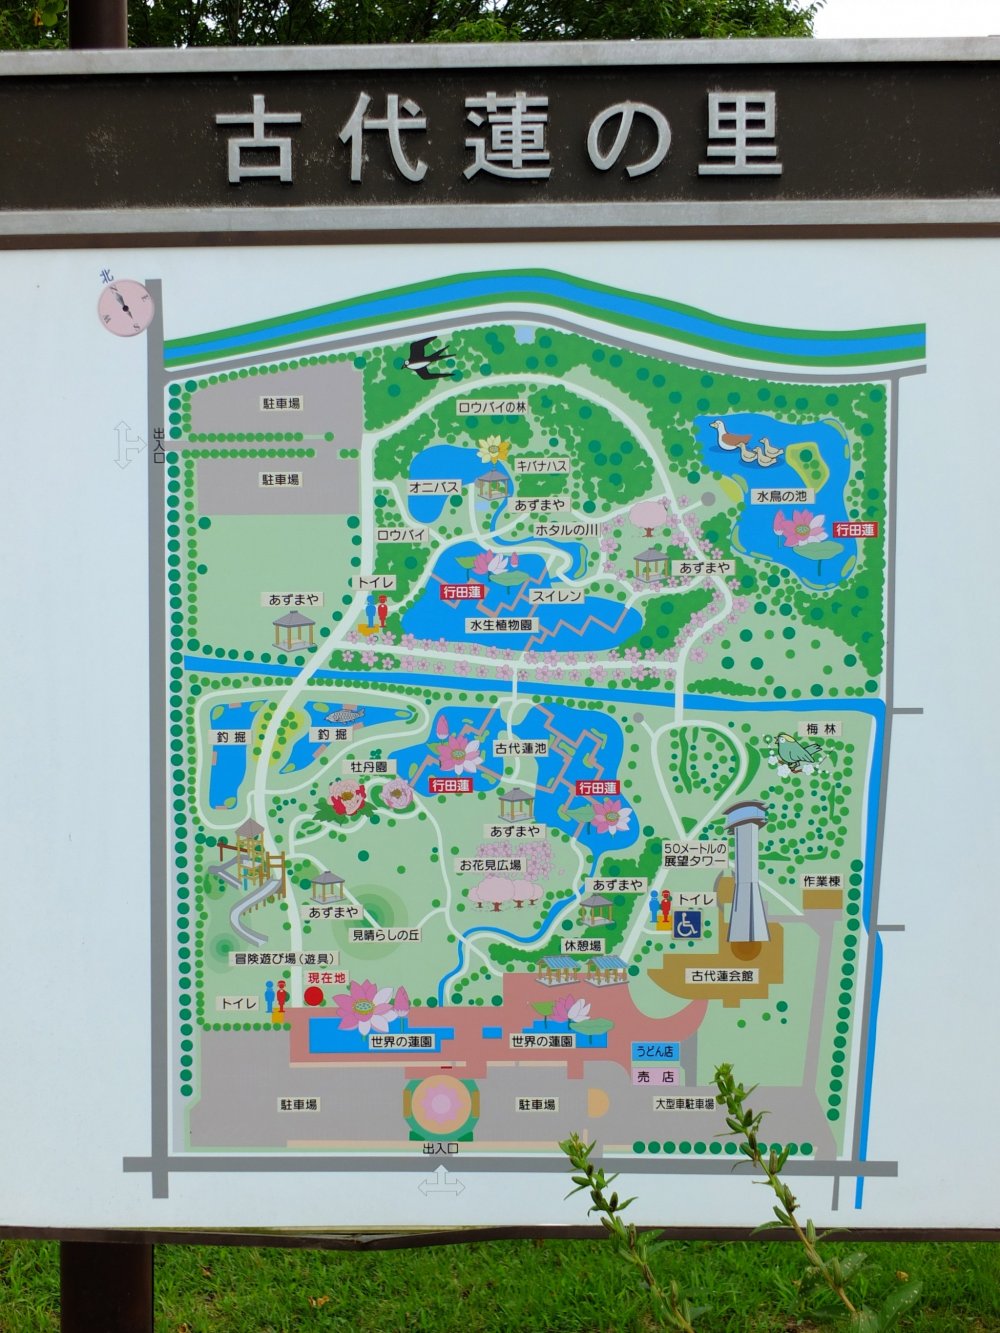 Bản đồ công viên cho thấy năm ao sen khác nhau